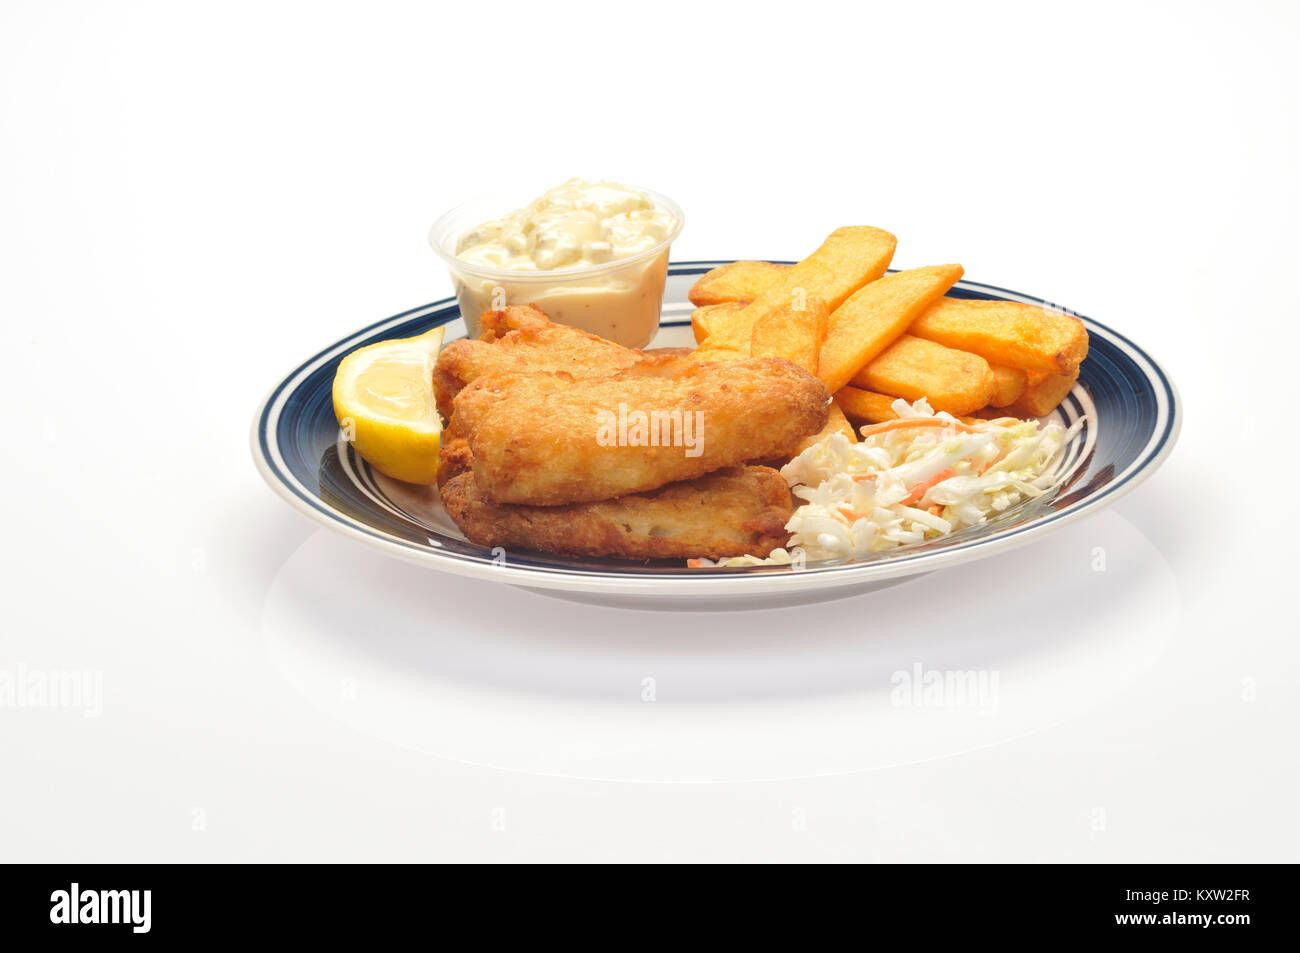 Le poisson frit et frites avec une pointe de citron, de choux et de la sauce tartare sur plaque bleu et blanc sur fond blanc, cut out Banque D'Images